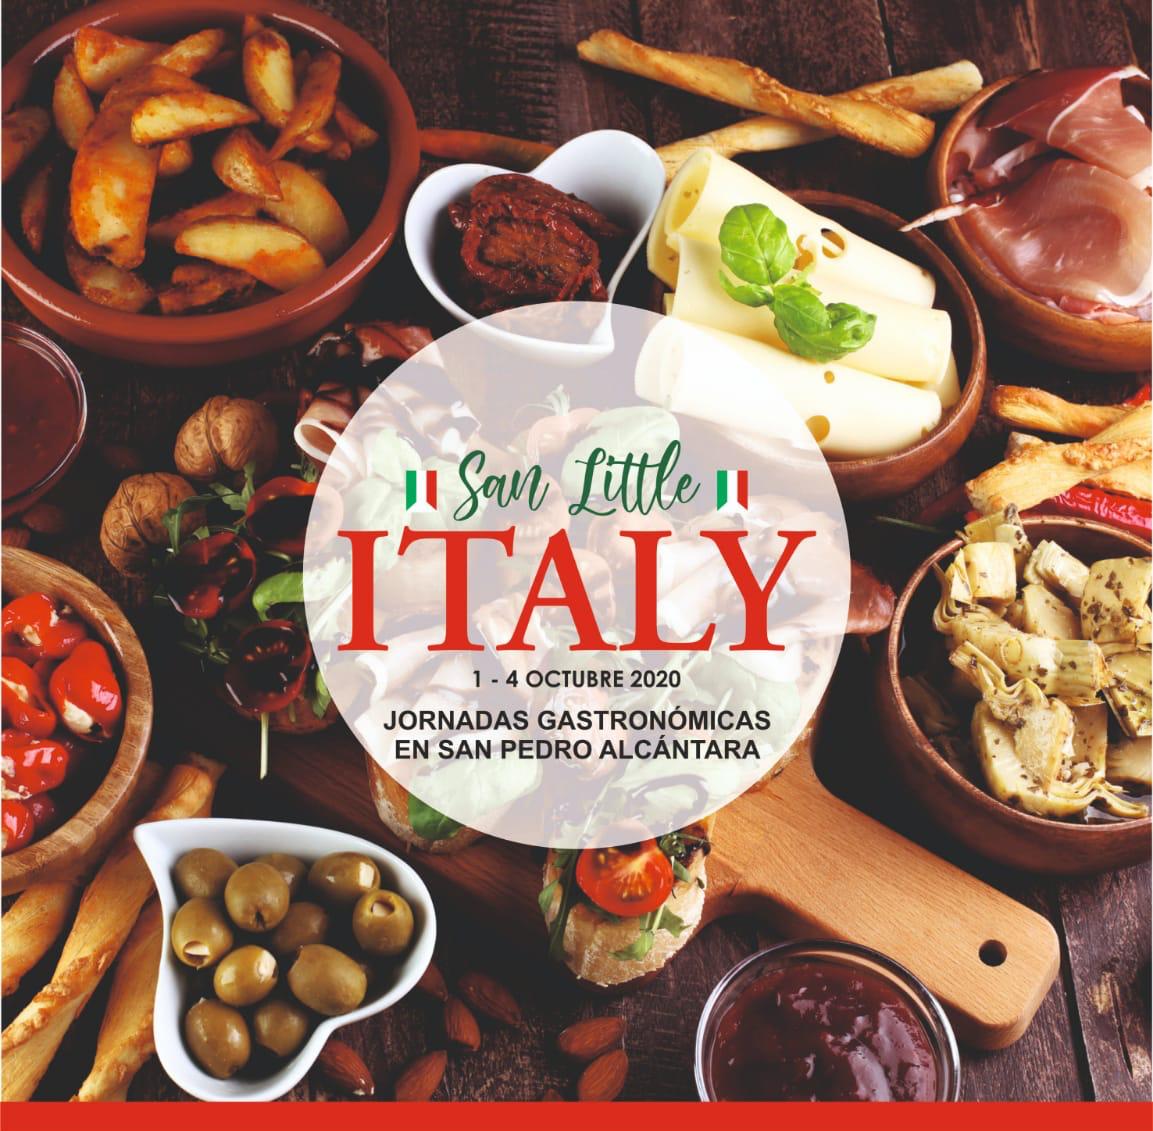 Una veintena de establecimientos de San Pedro Alcántara participará del 1 al 4 de octubre en las primeras jornadas gastronómicas ‘San Little Italy’